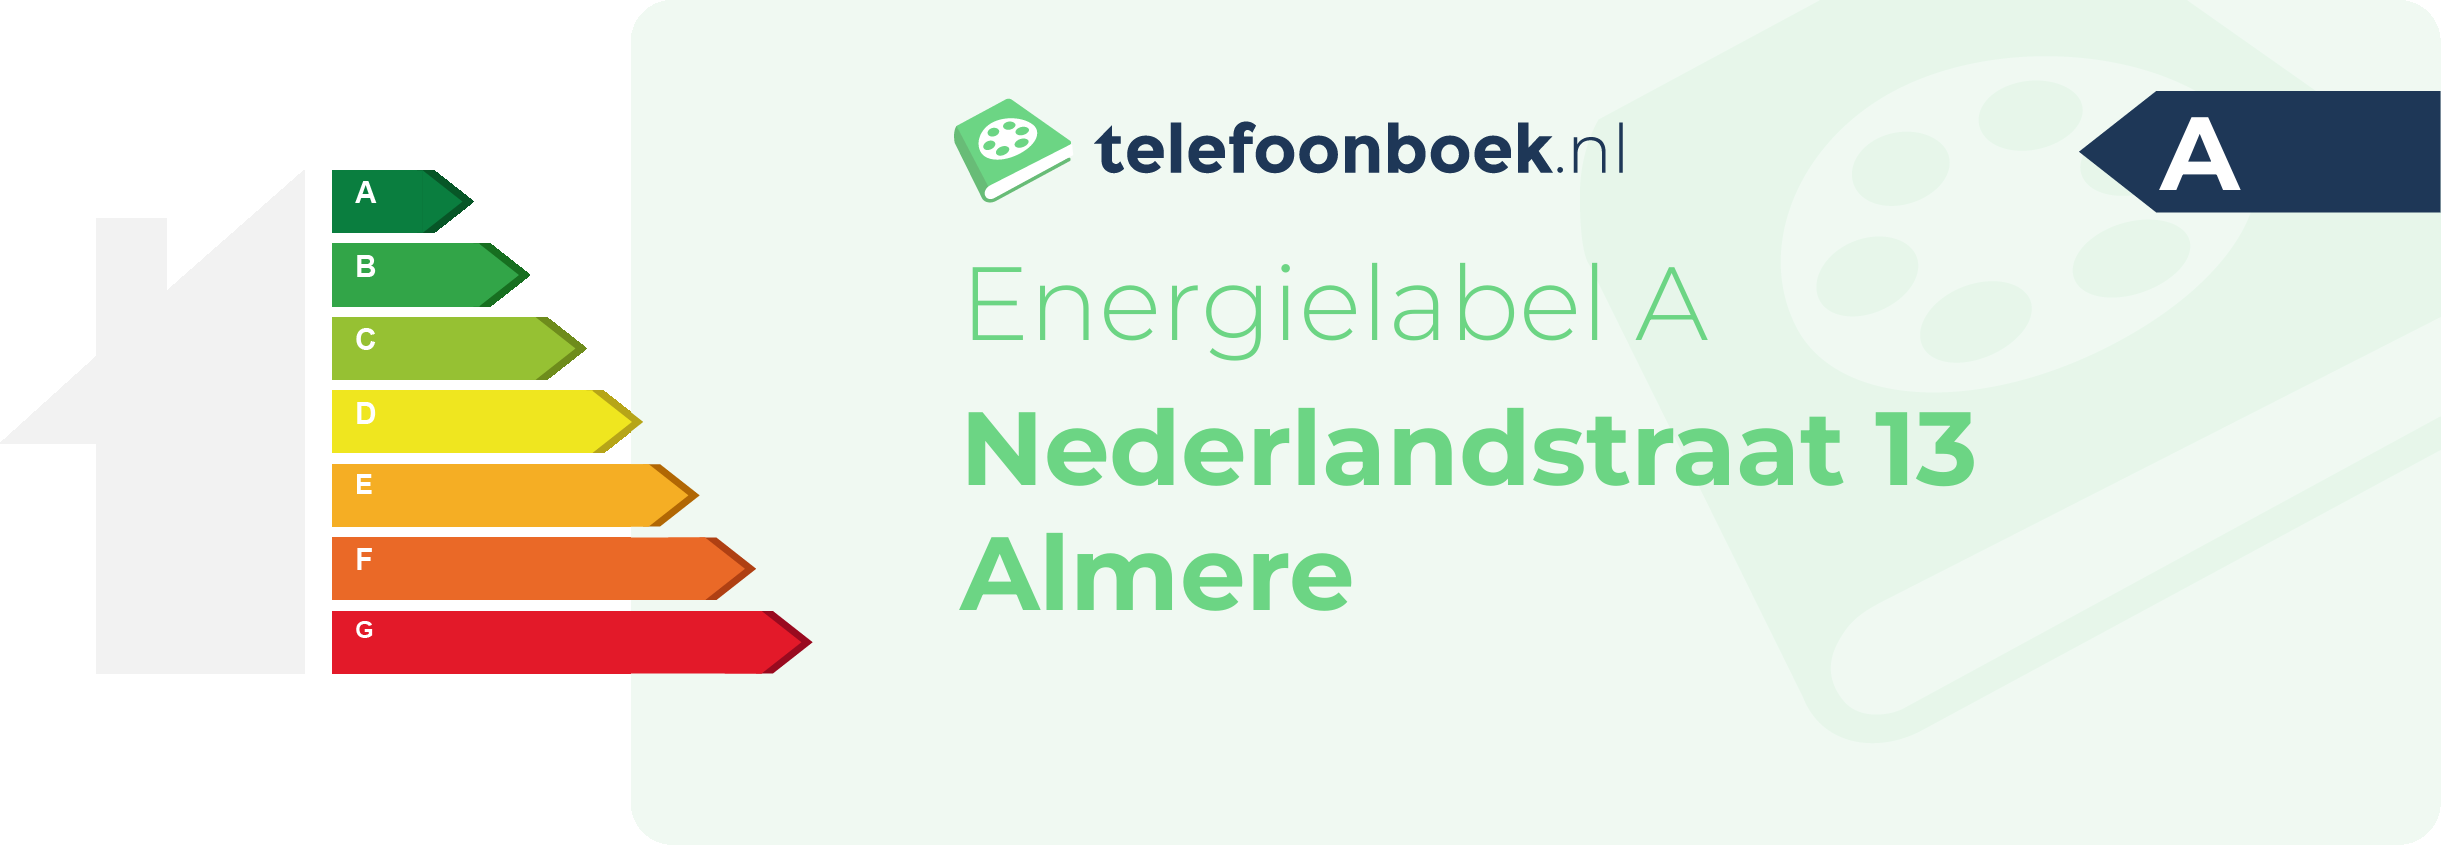 Energielabel Nederlandstraat 13 Almere